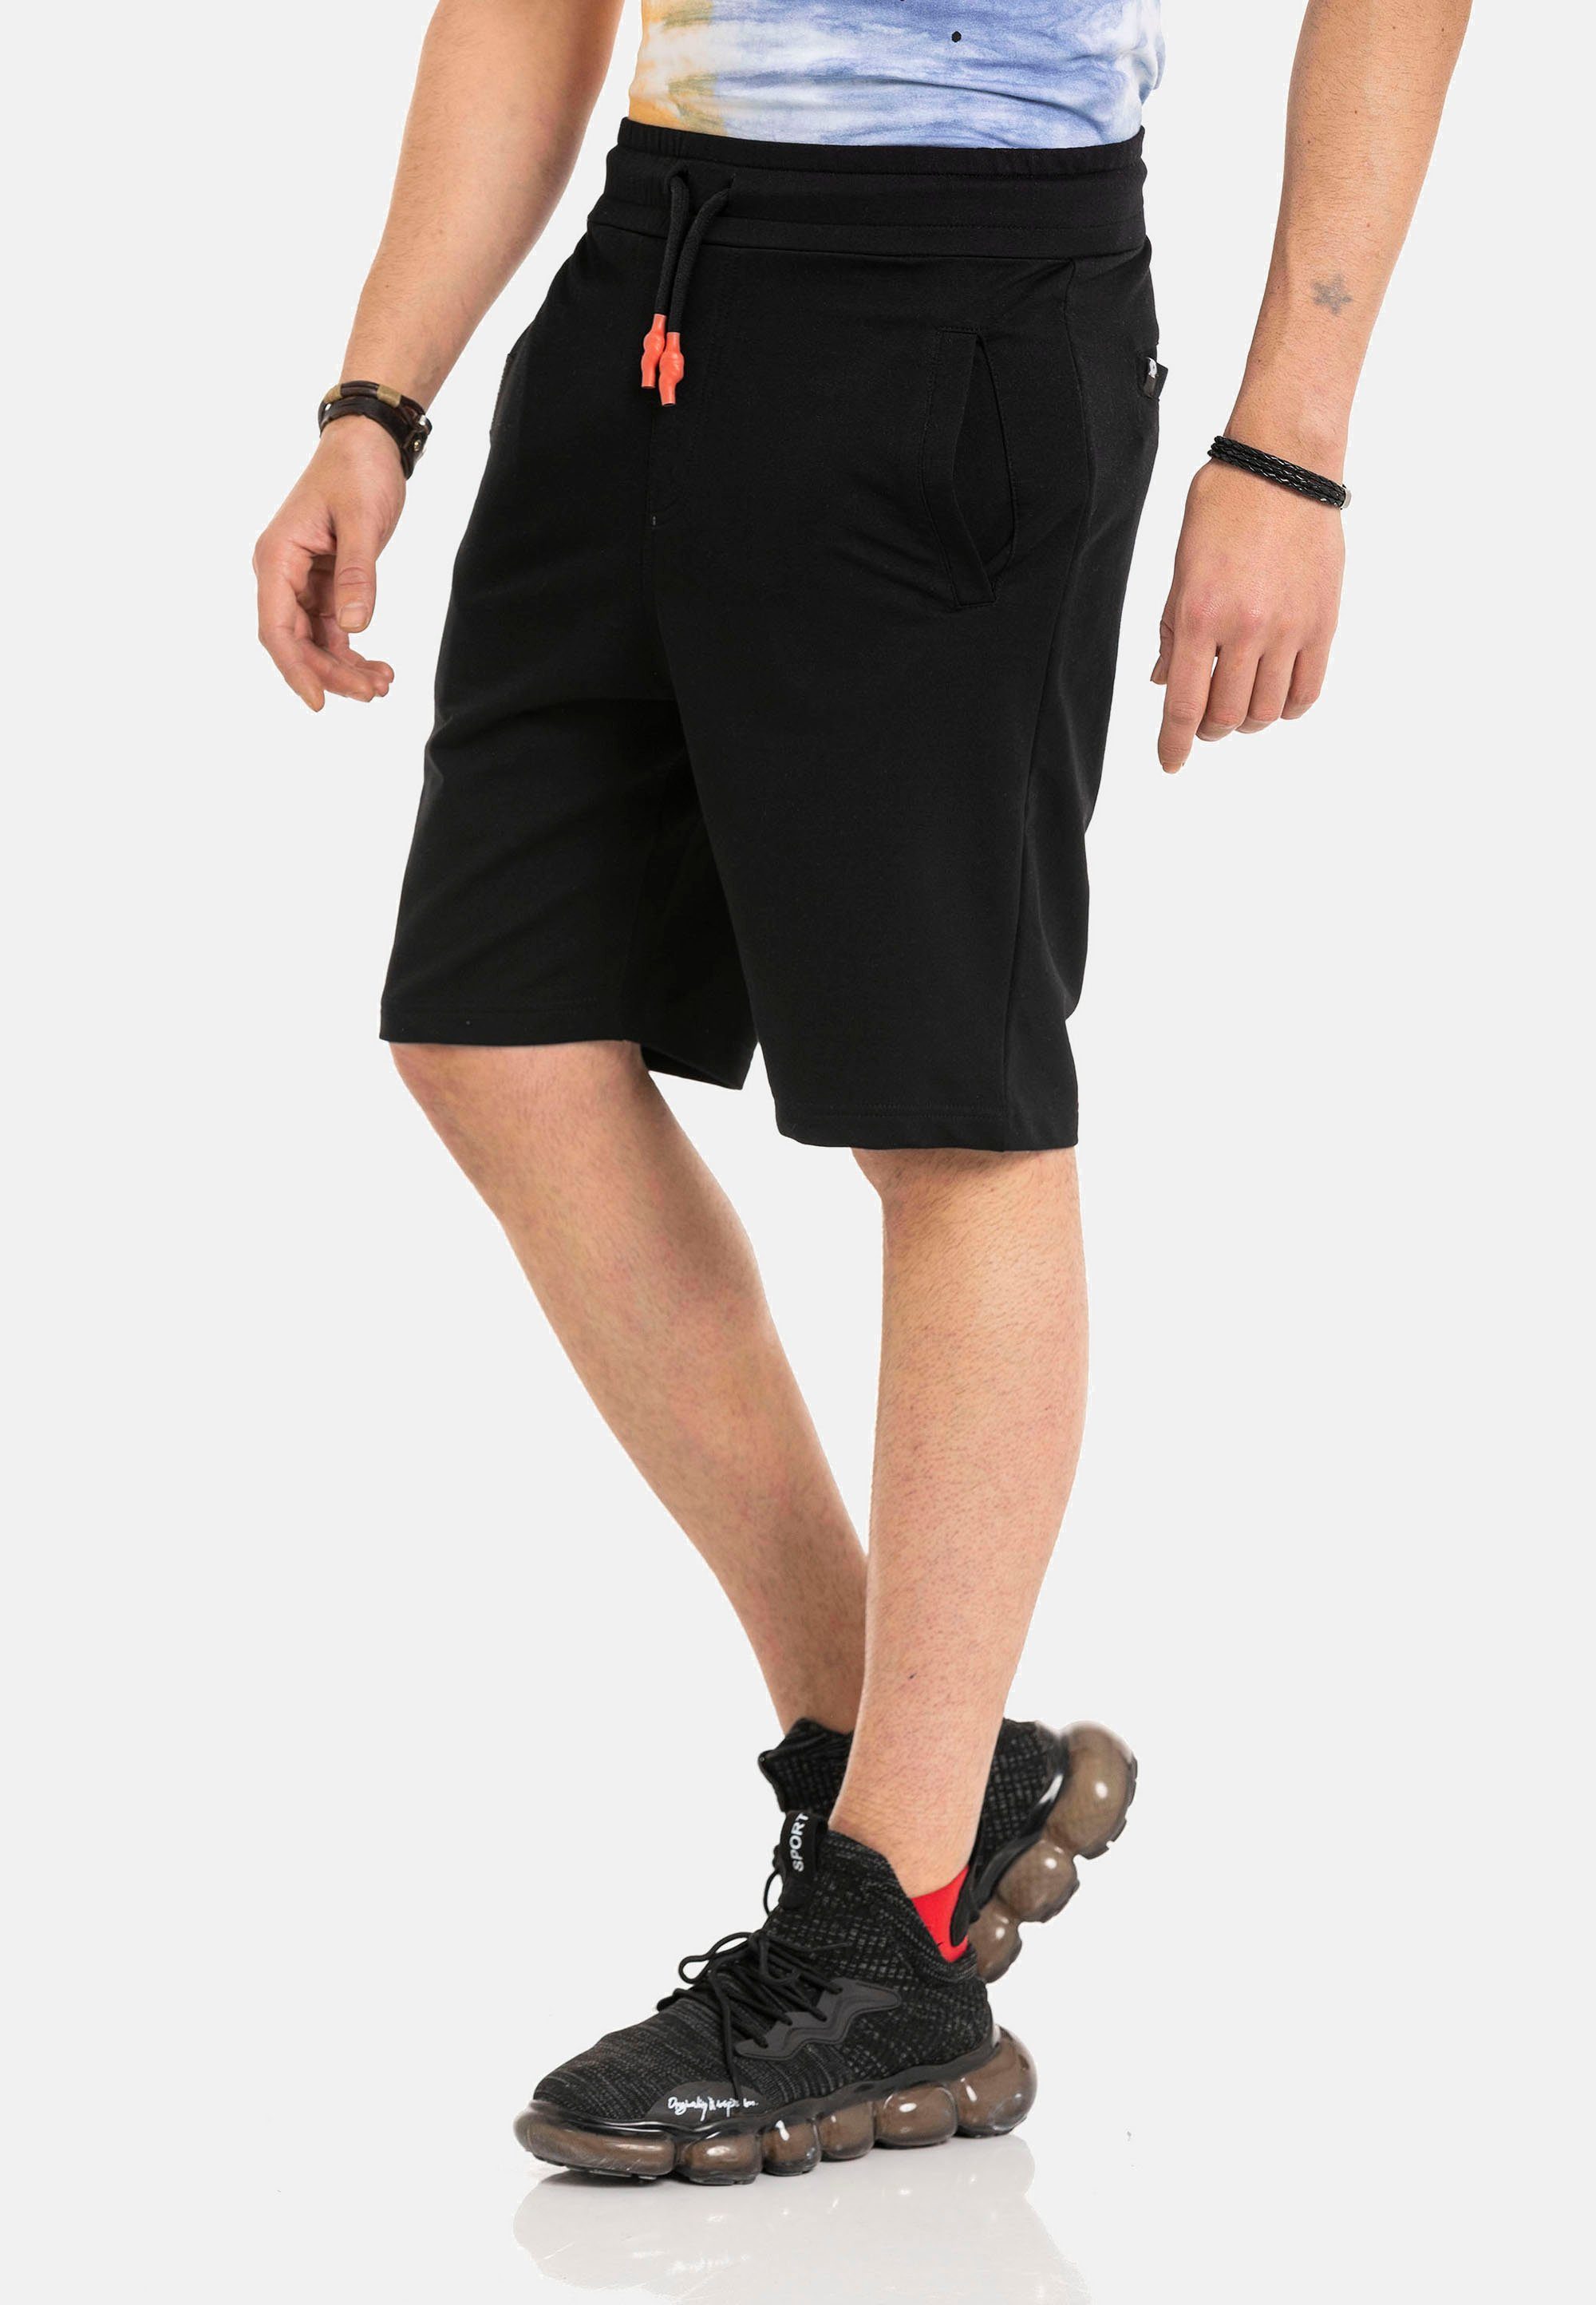 Cipo & Baxx sportlichem Shorts Look in schwarz